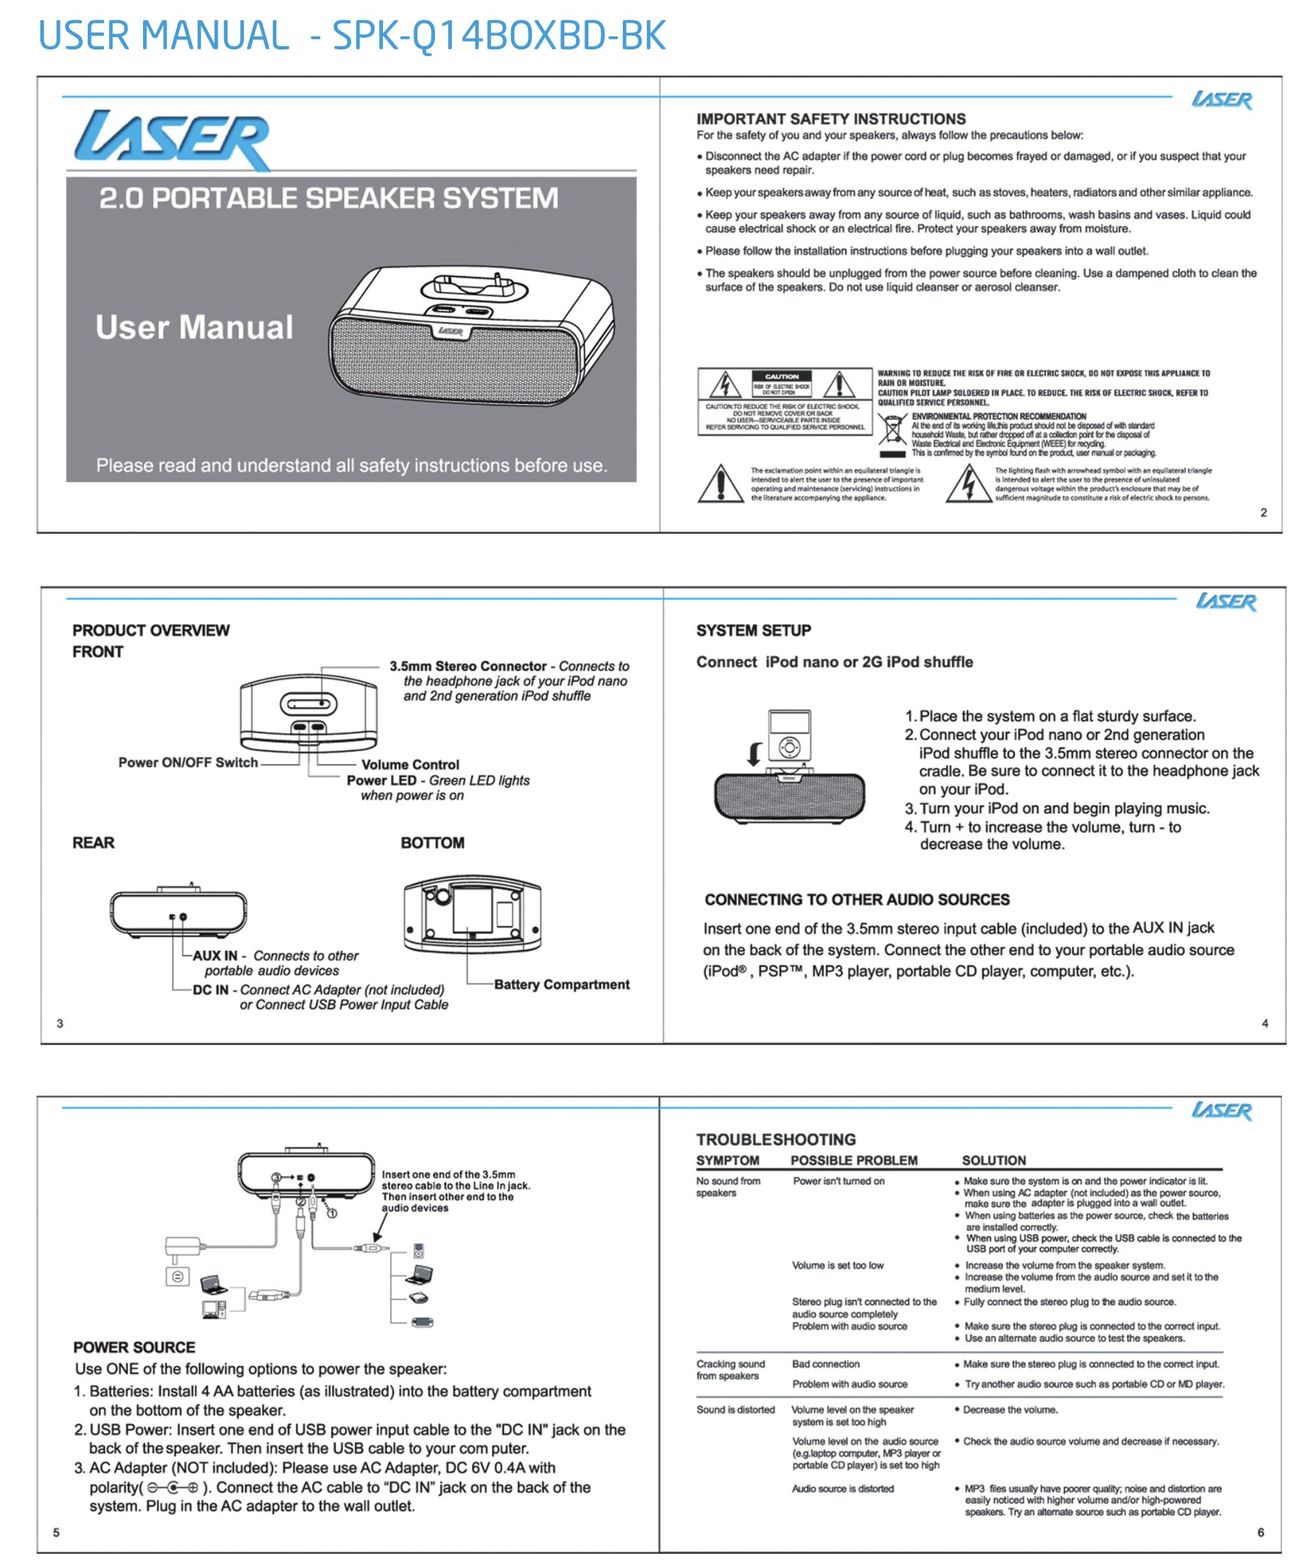 Laser SPK-Q14BOXBD-BK Portable Speaker User Manual